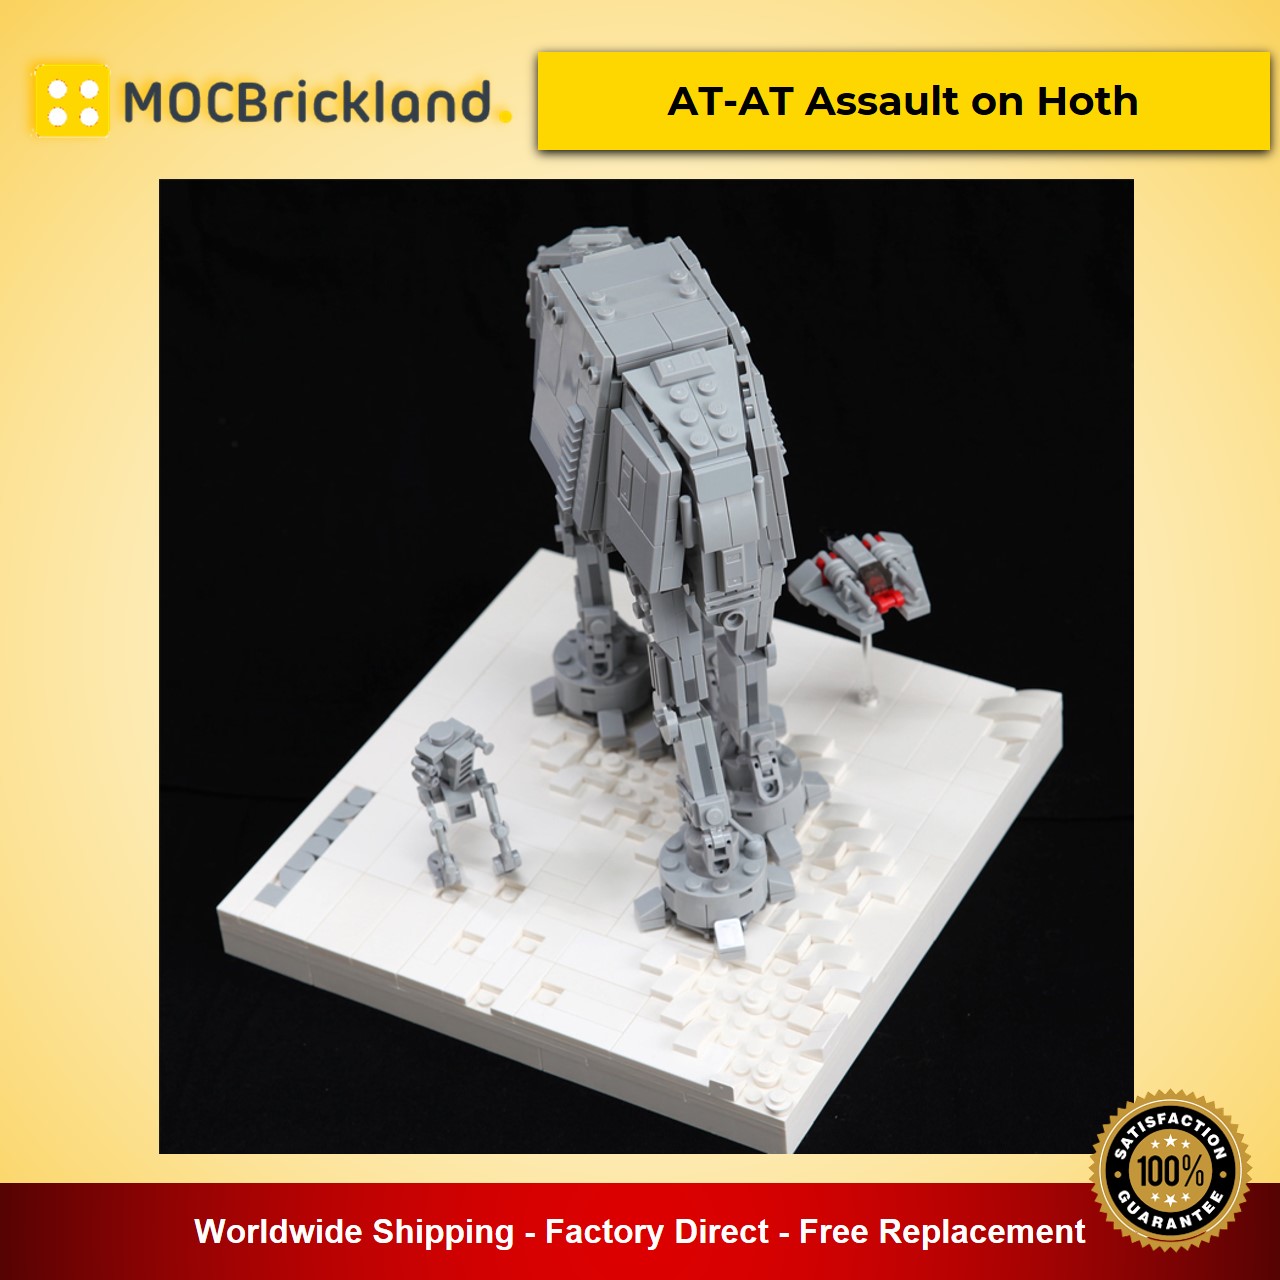 MOCBRICKLAND MOC-11431 AT-AT Assault on Hoth